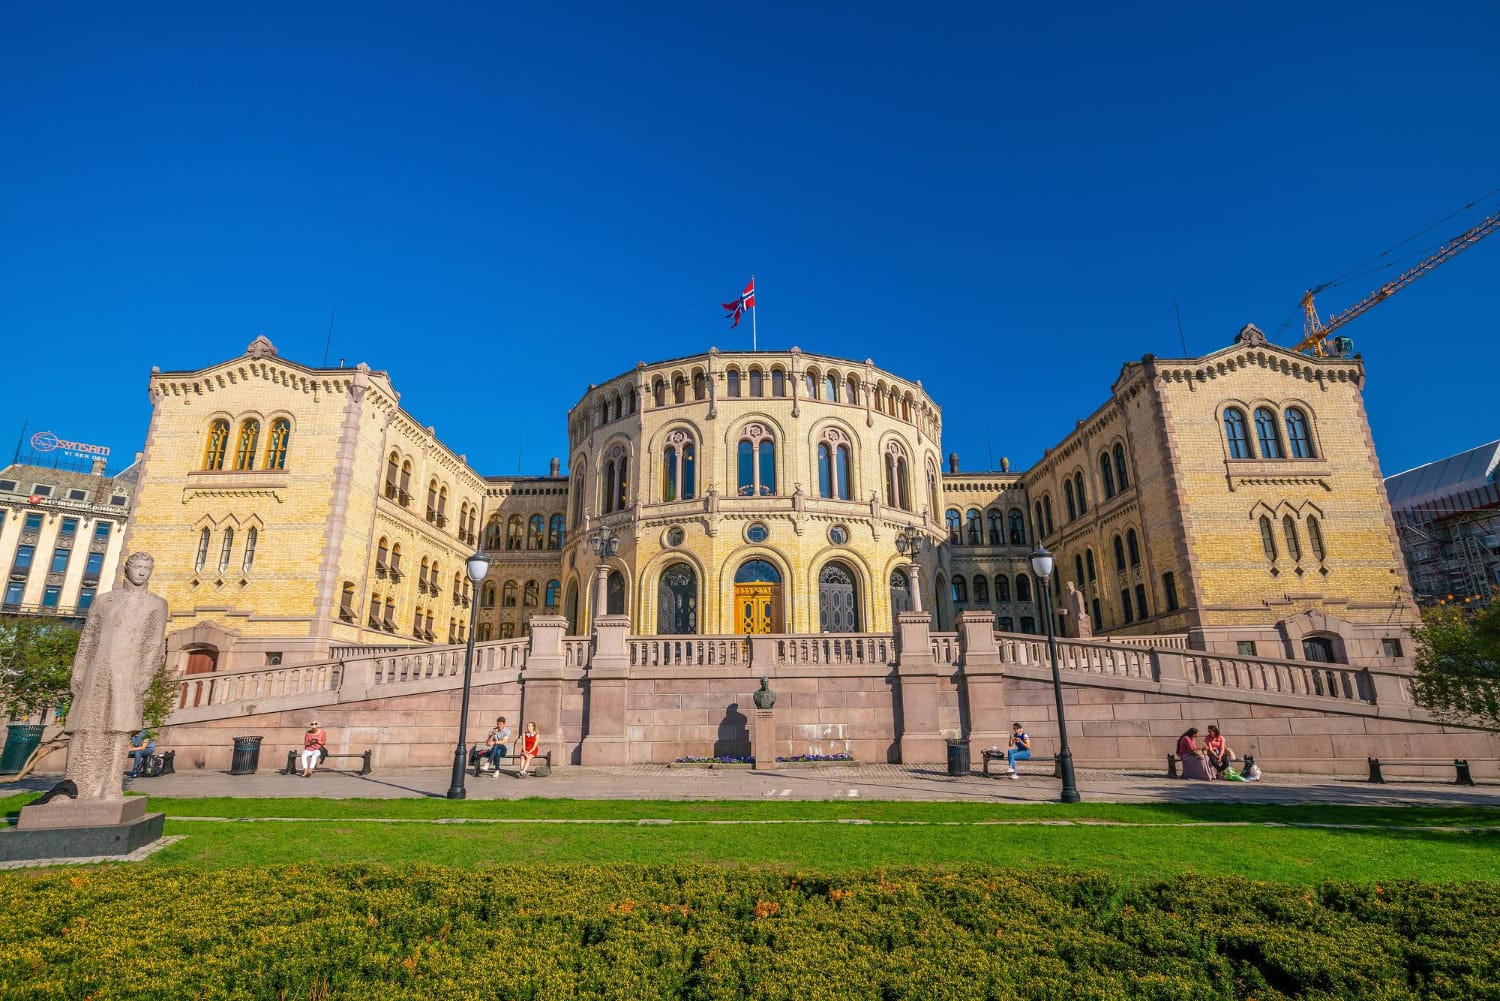 Parlamento-Noruego-Oslo